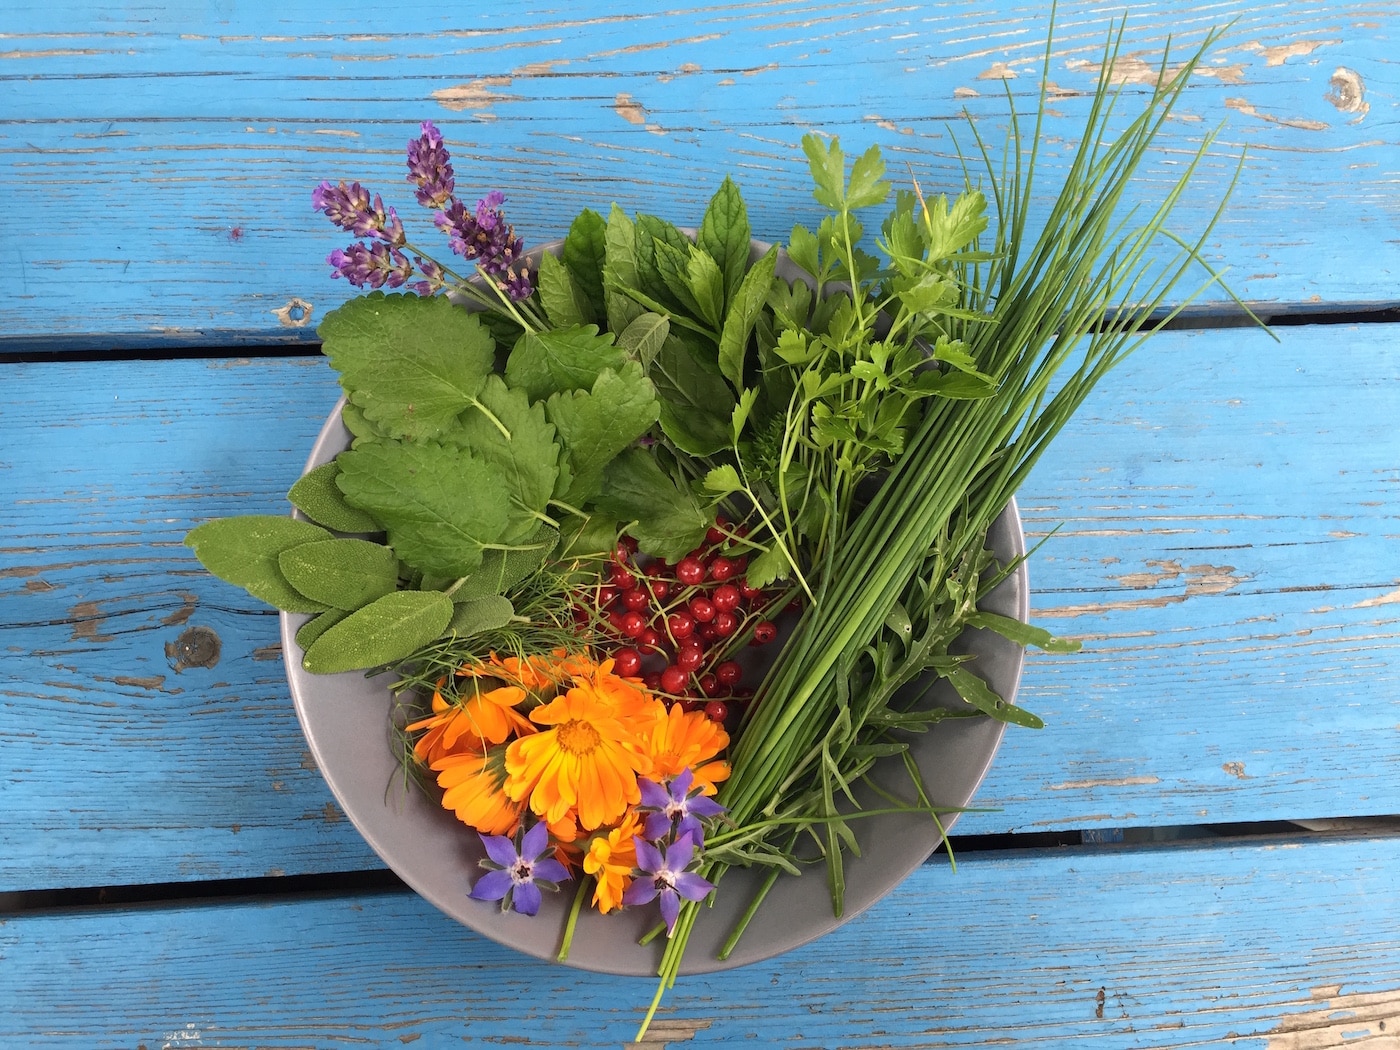 Kräuter des Sommers: Salbei, Lavendel, Borretsch, Ringelblumen, Dill, Pfefferminze, Rucola, Schnittlauch und Johannisbeeren in einer violetten Schale auf einem blauen Tisch.